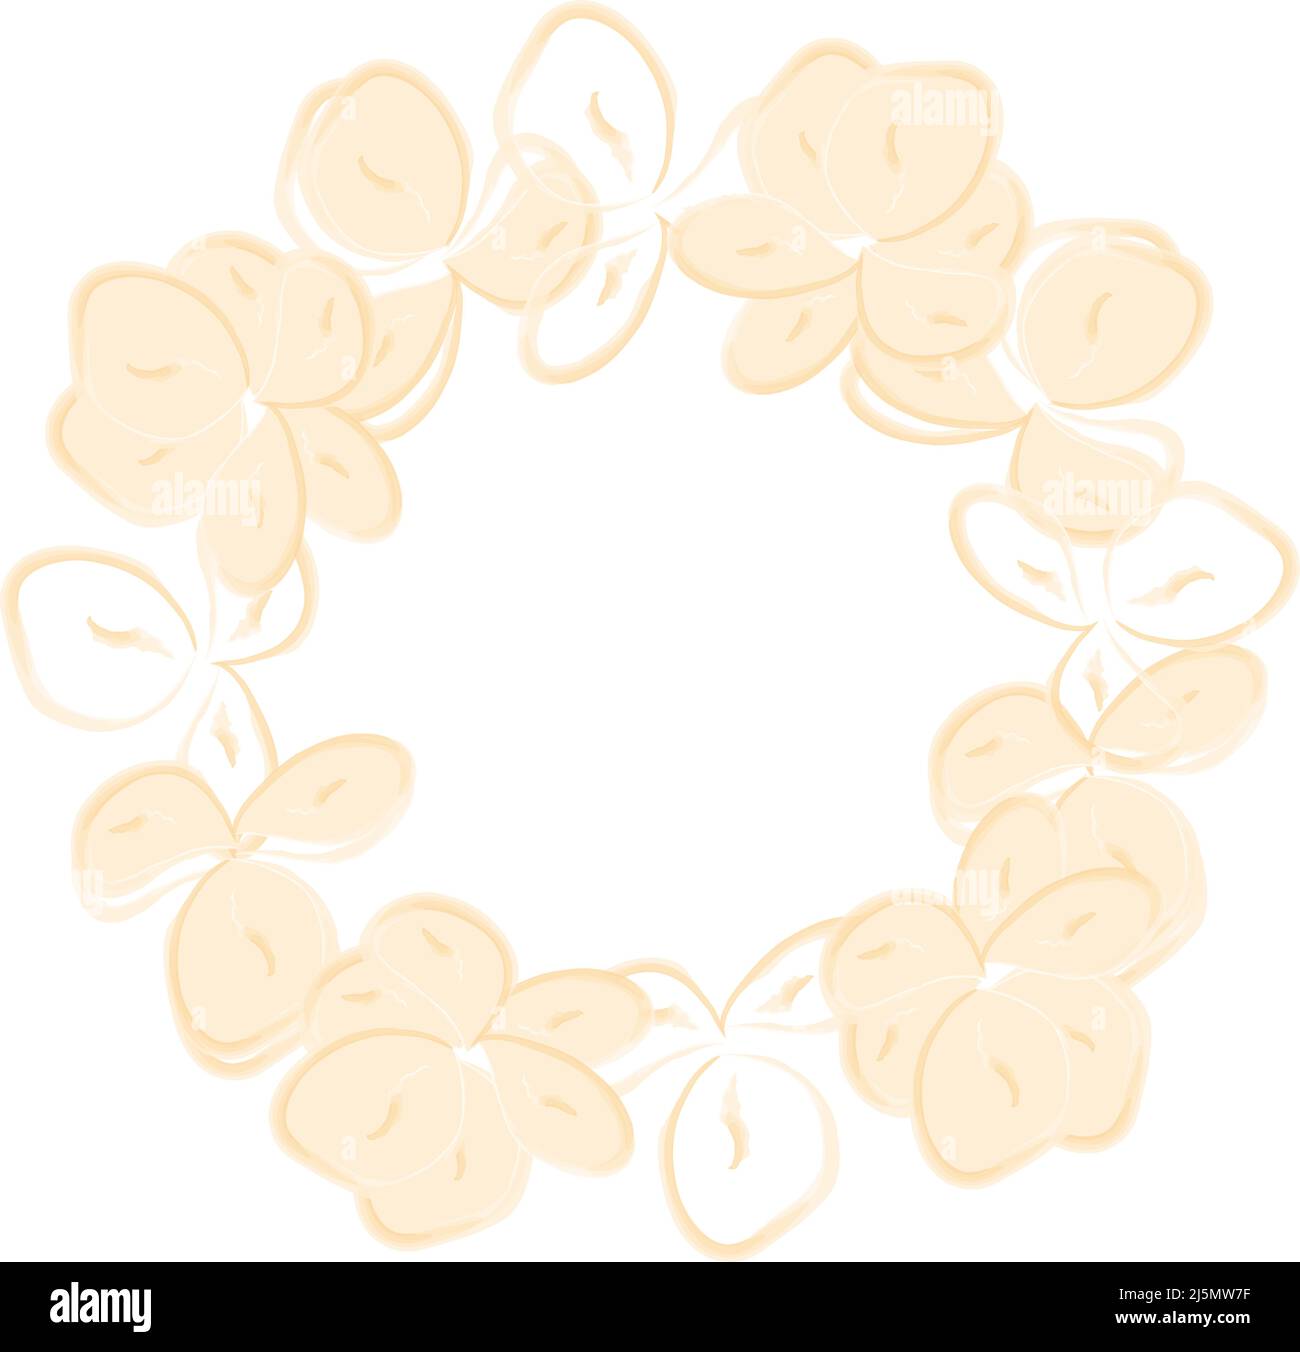 Runder Rahmen aus blasser Sandblume im Aquarellstil. Ideal für Grußkarten und Hochzeitseinladungen, Poster, Flyer, Herzlichen Glückwunsch. Vektorgrafik. Stock Vektor